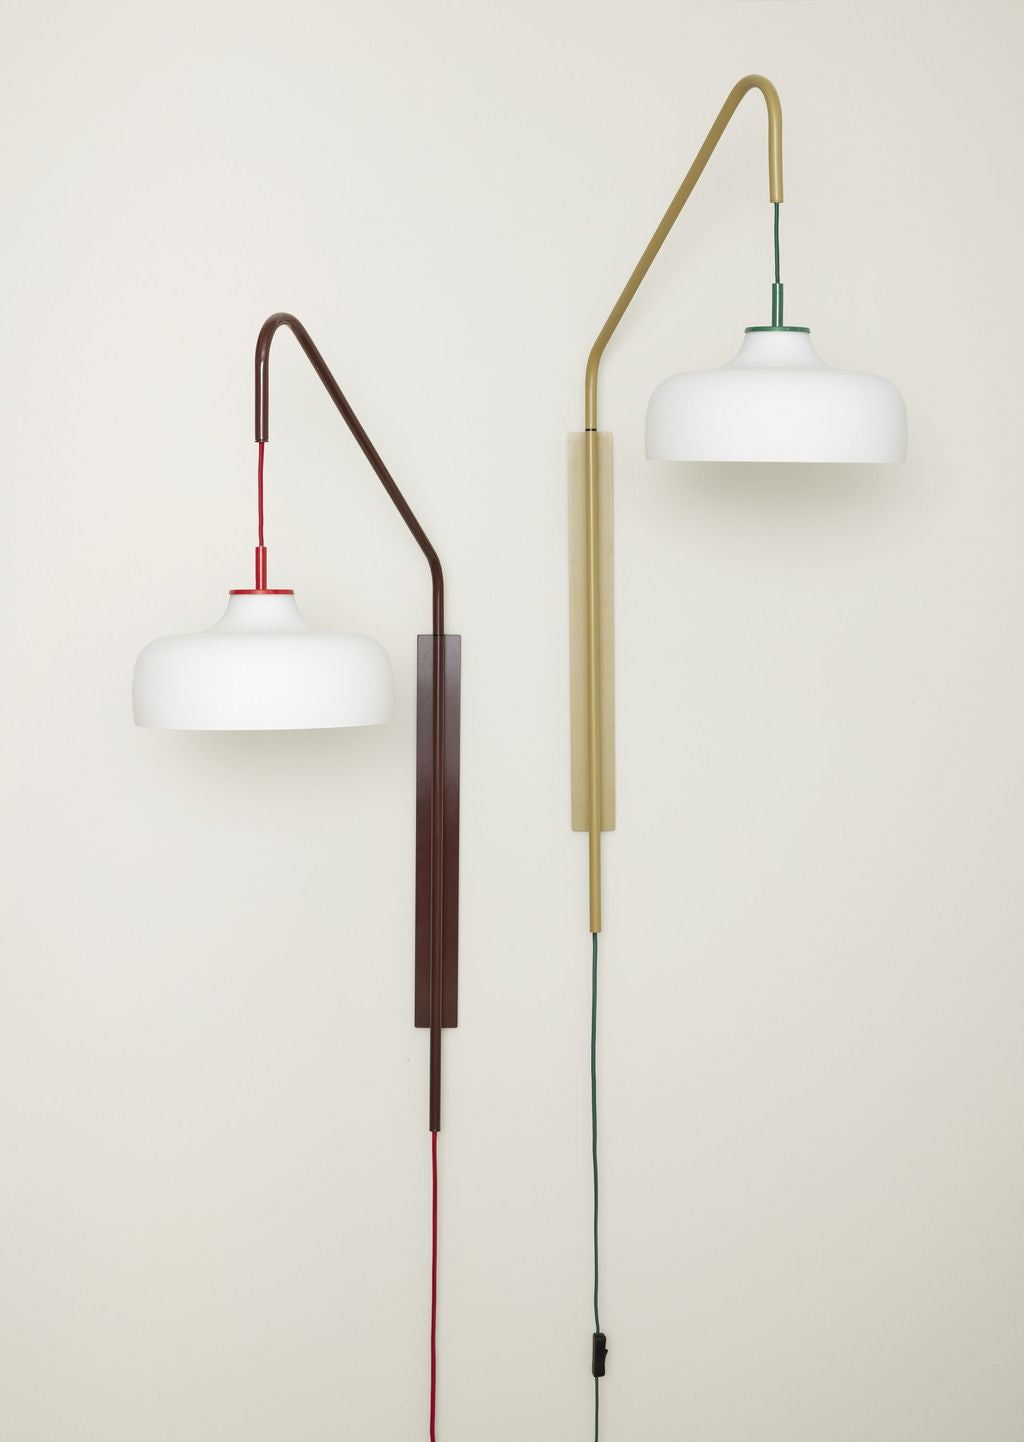 Hübsch Current Væglampe, Rødbrun/Hvid